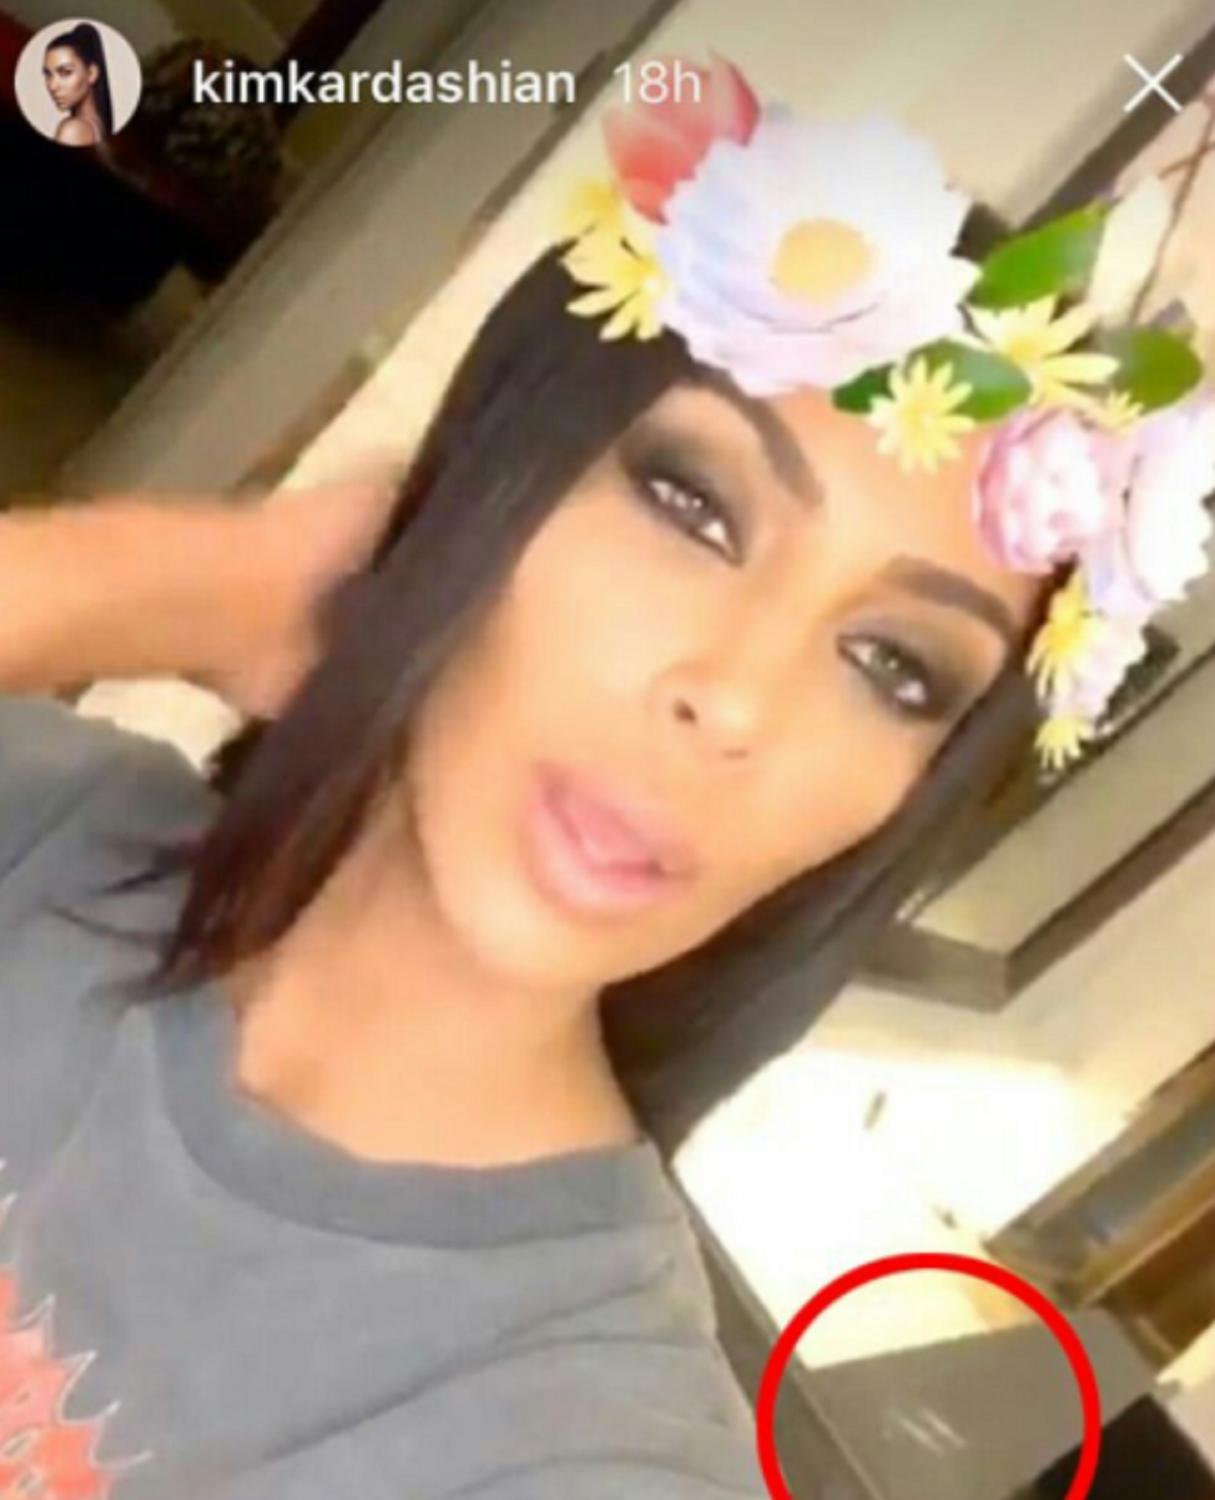 Kim Kardashian descobreix en un vídeo gravat amb telèfon mòbil quin dels seus tres marits és homosexual